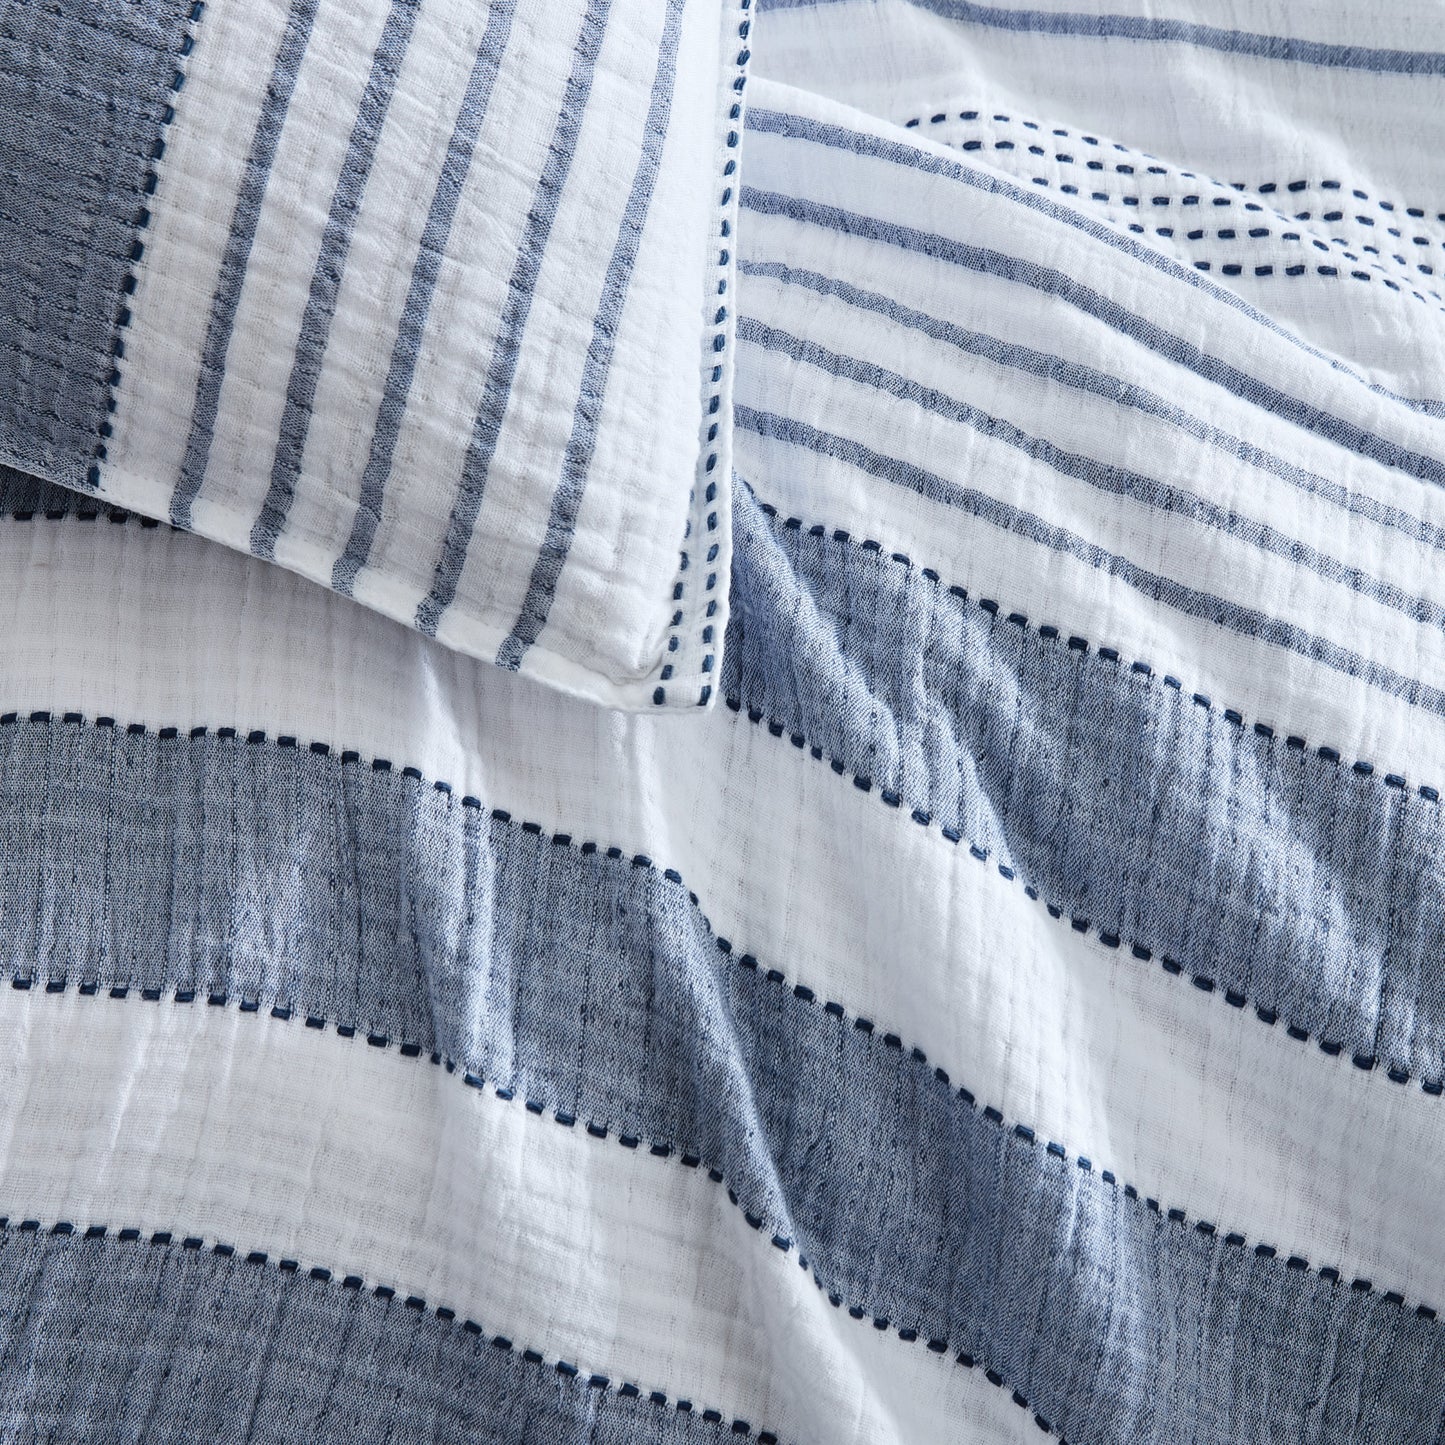 DKNY Comfy Stripe Comforter Set